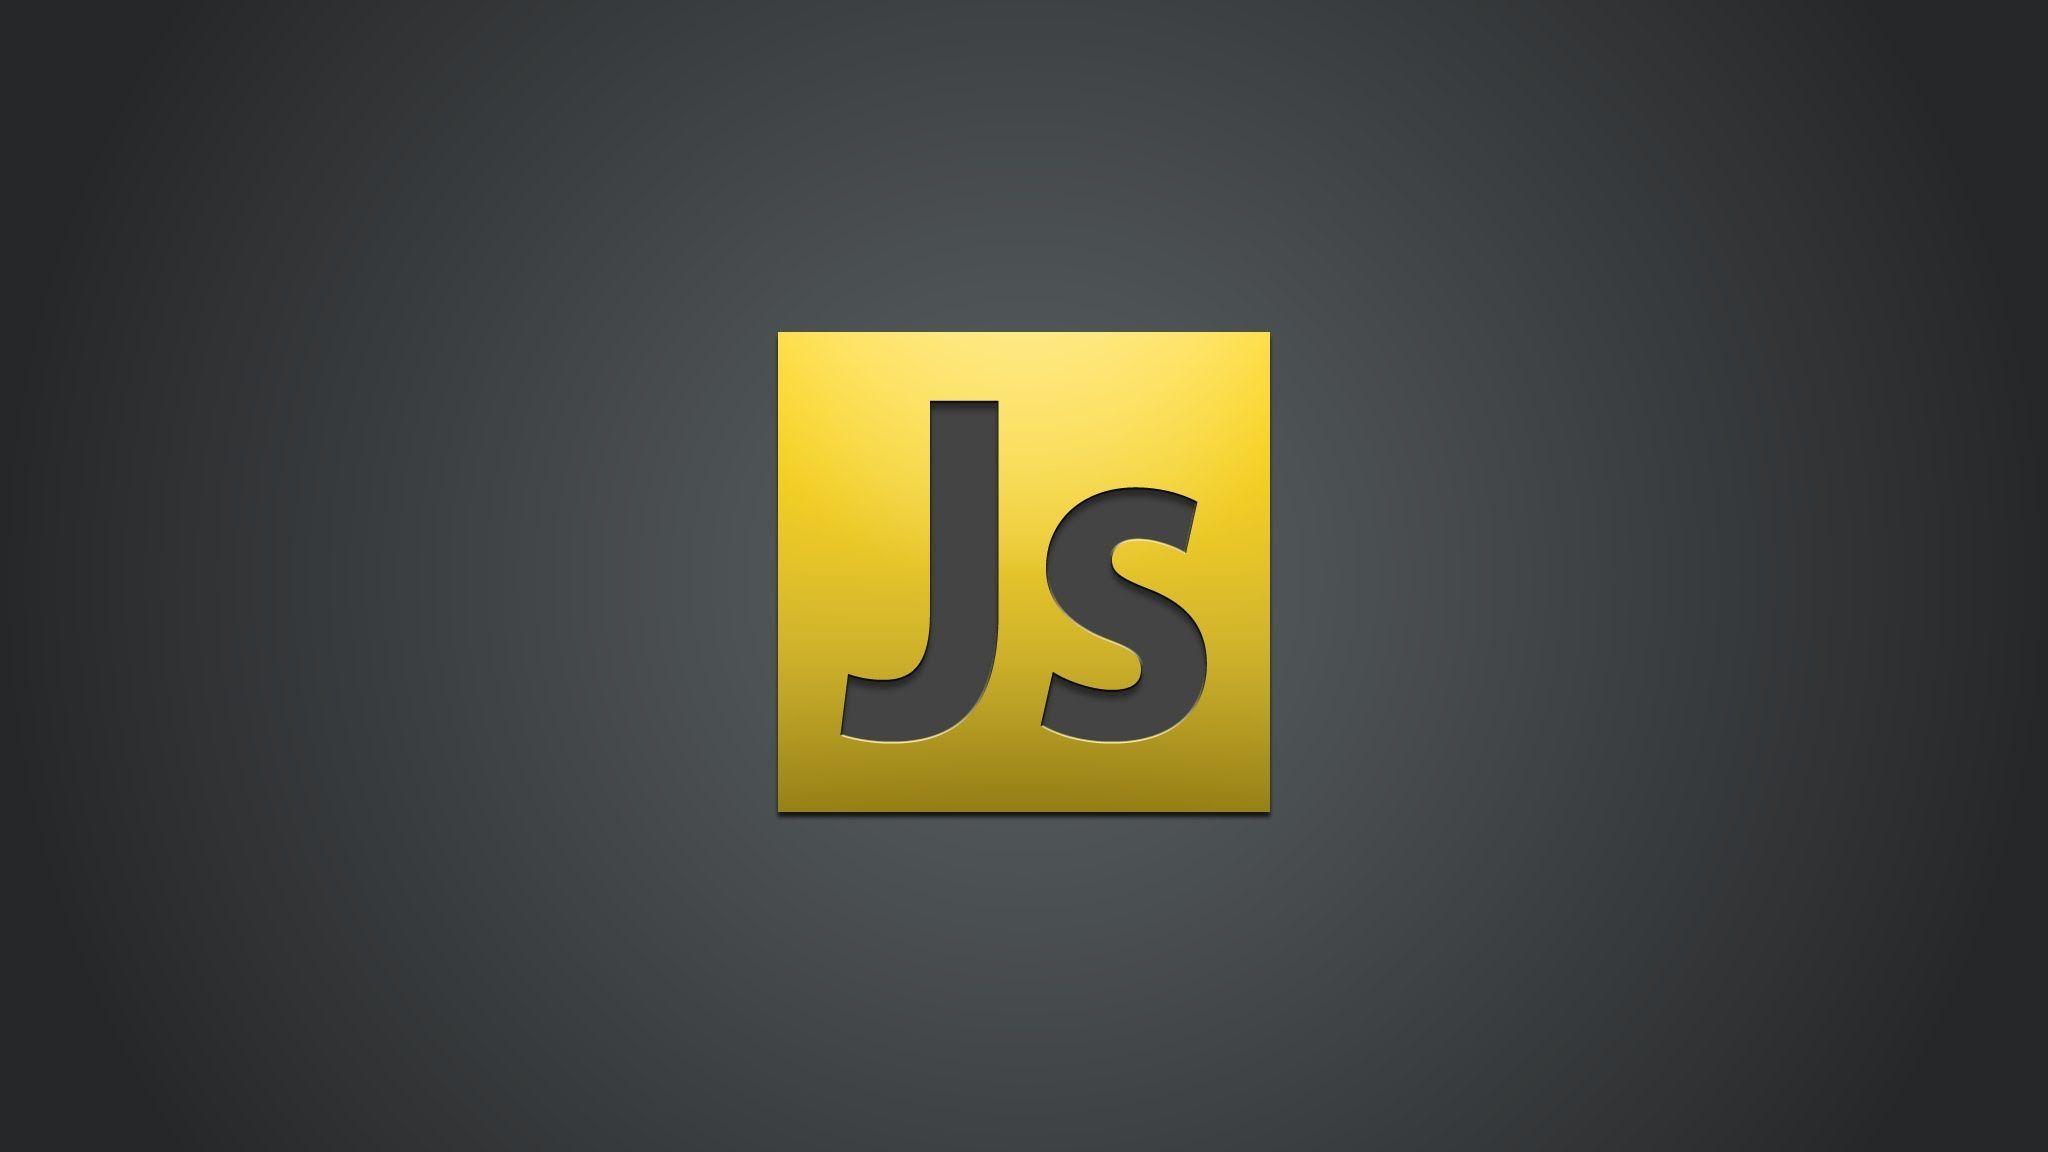 Curso básico de JavaScript - Variables, Operadores, Condicionales